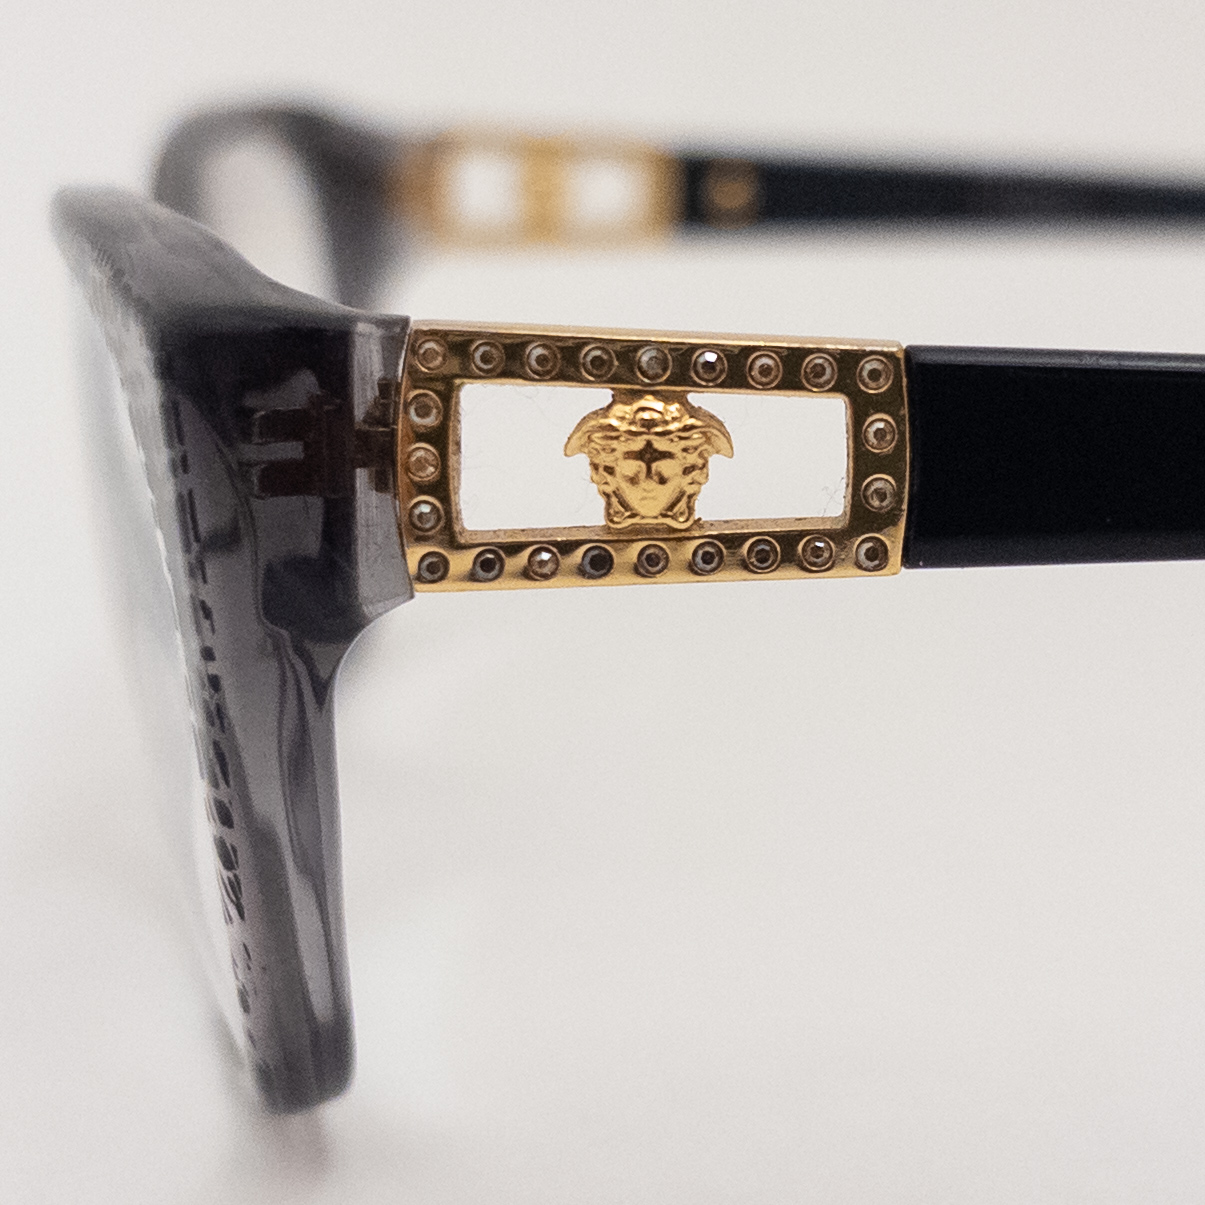 Versace Rx Eyeglasses